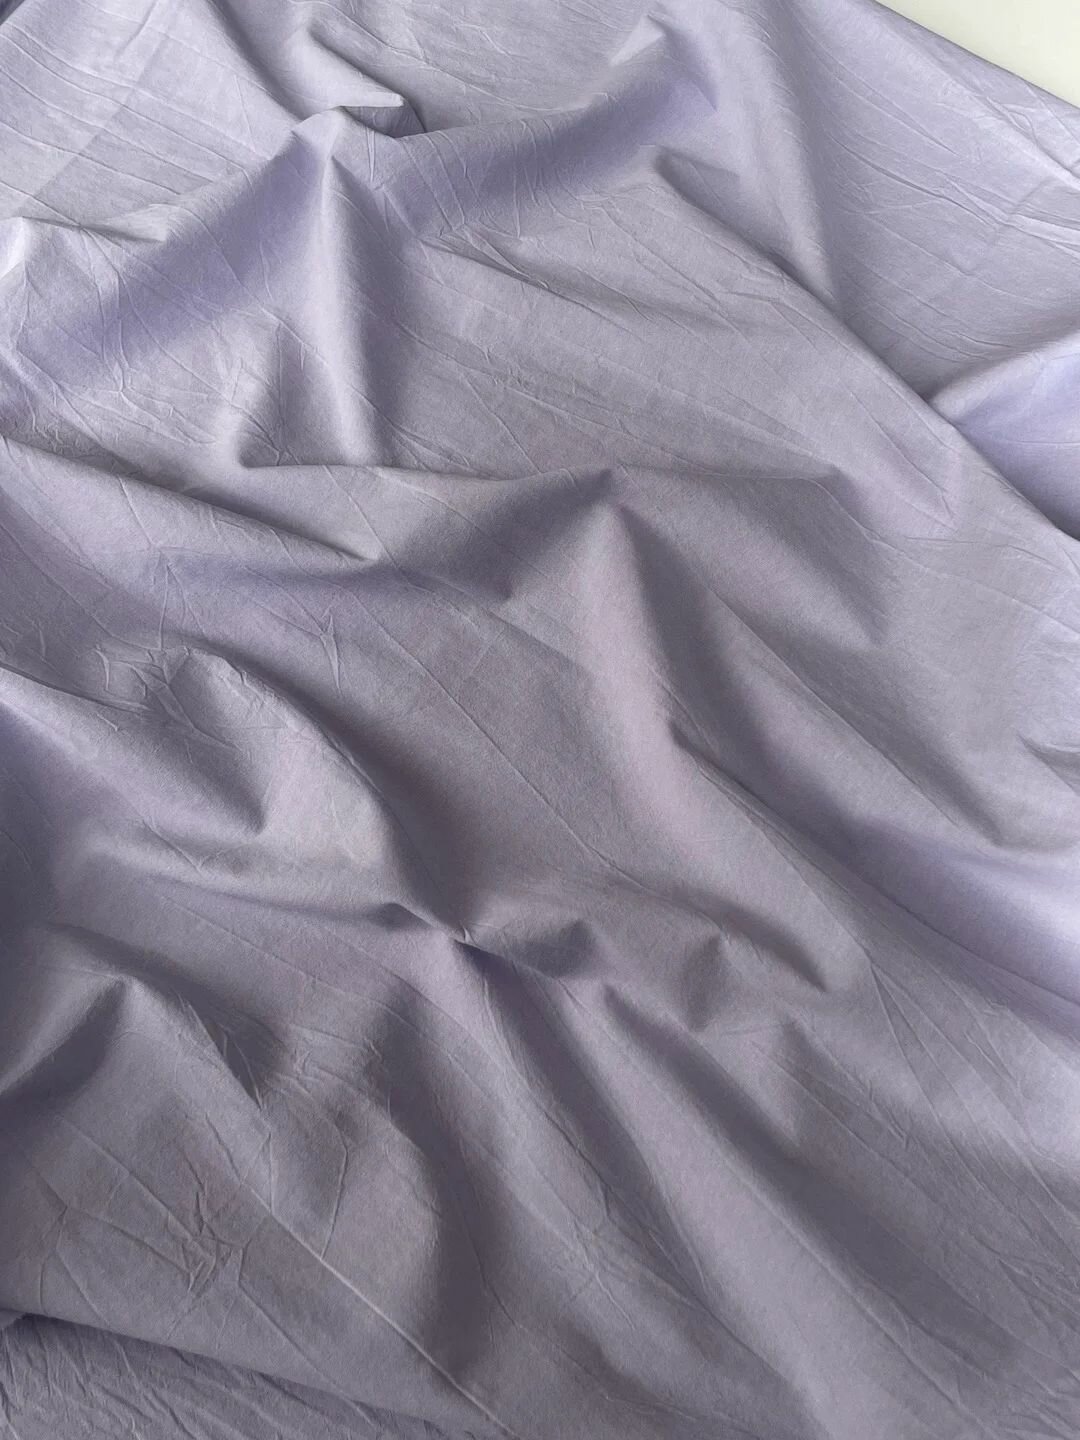 Комплект постельного белья Односпальный из премиальной ткани Варёный хлопок Lavender Field, пододеяльник 135x200, простыня без резинки 160x240, наволочка 70x70